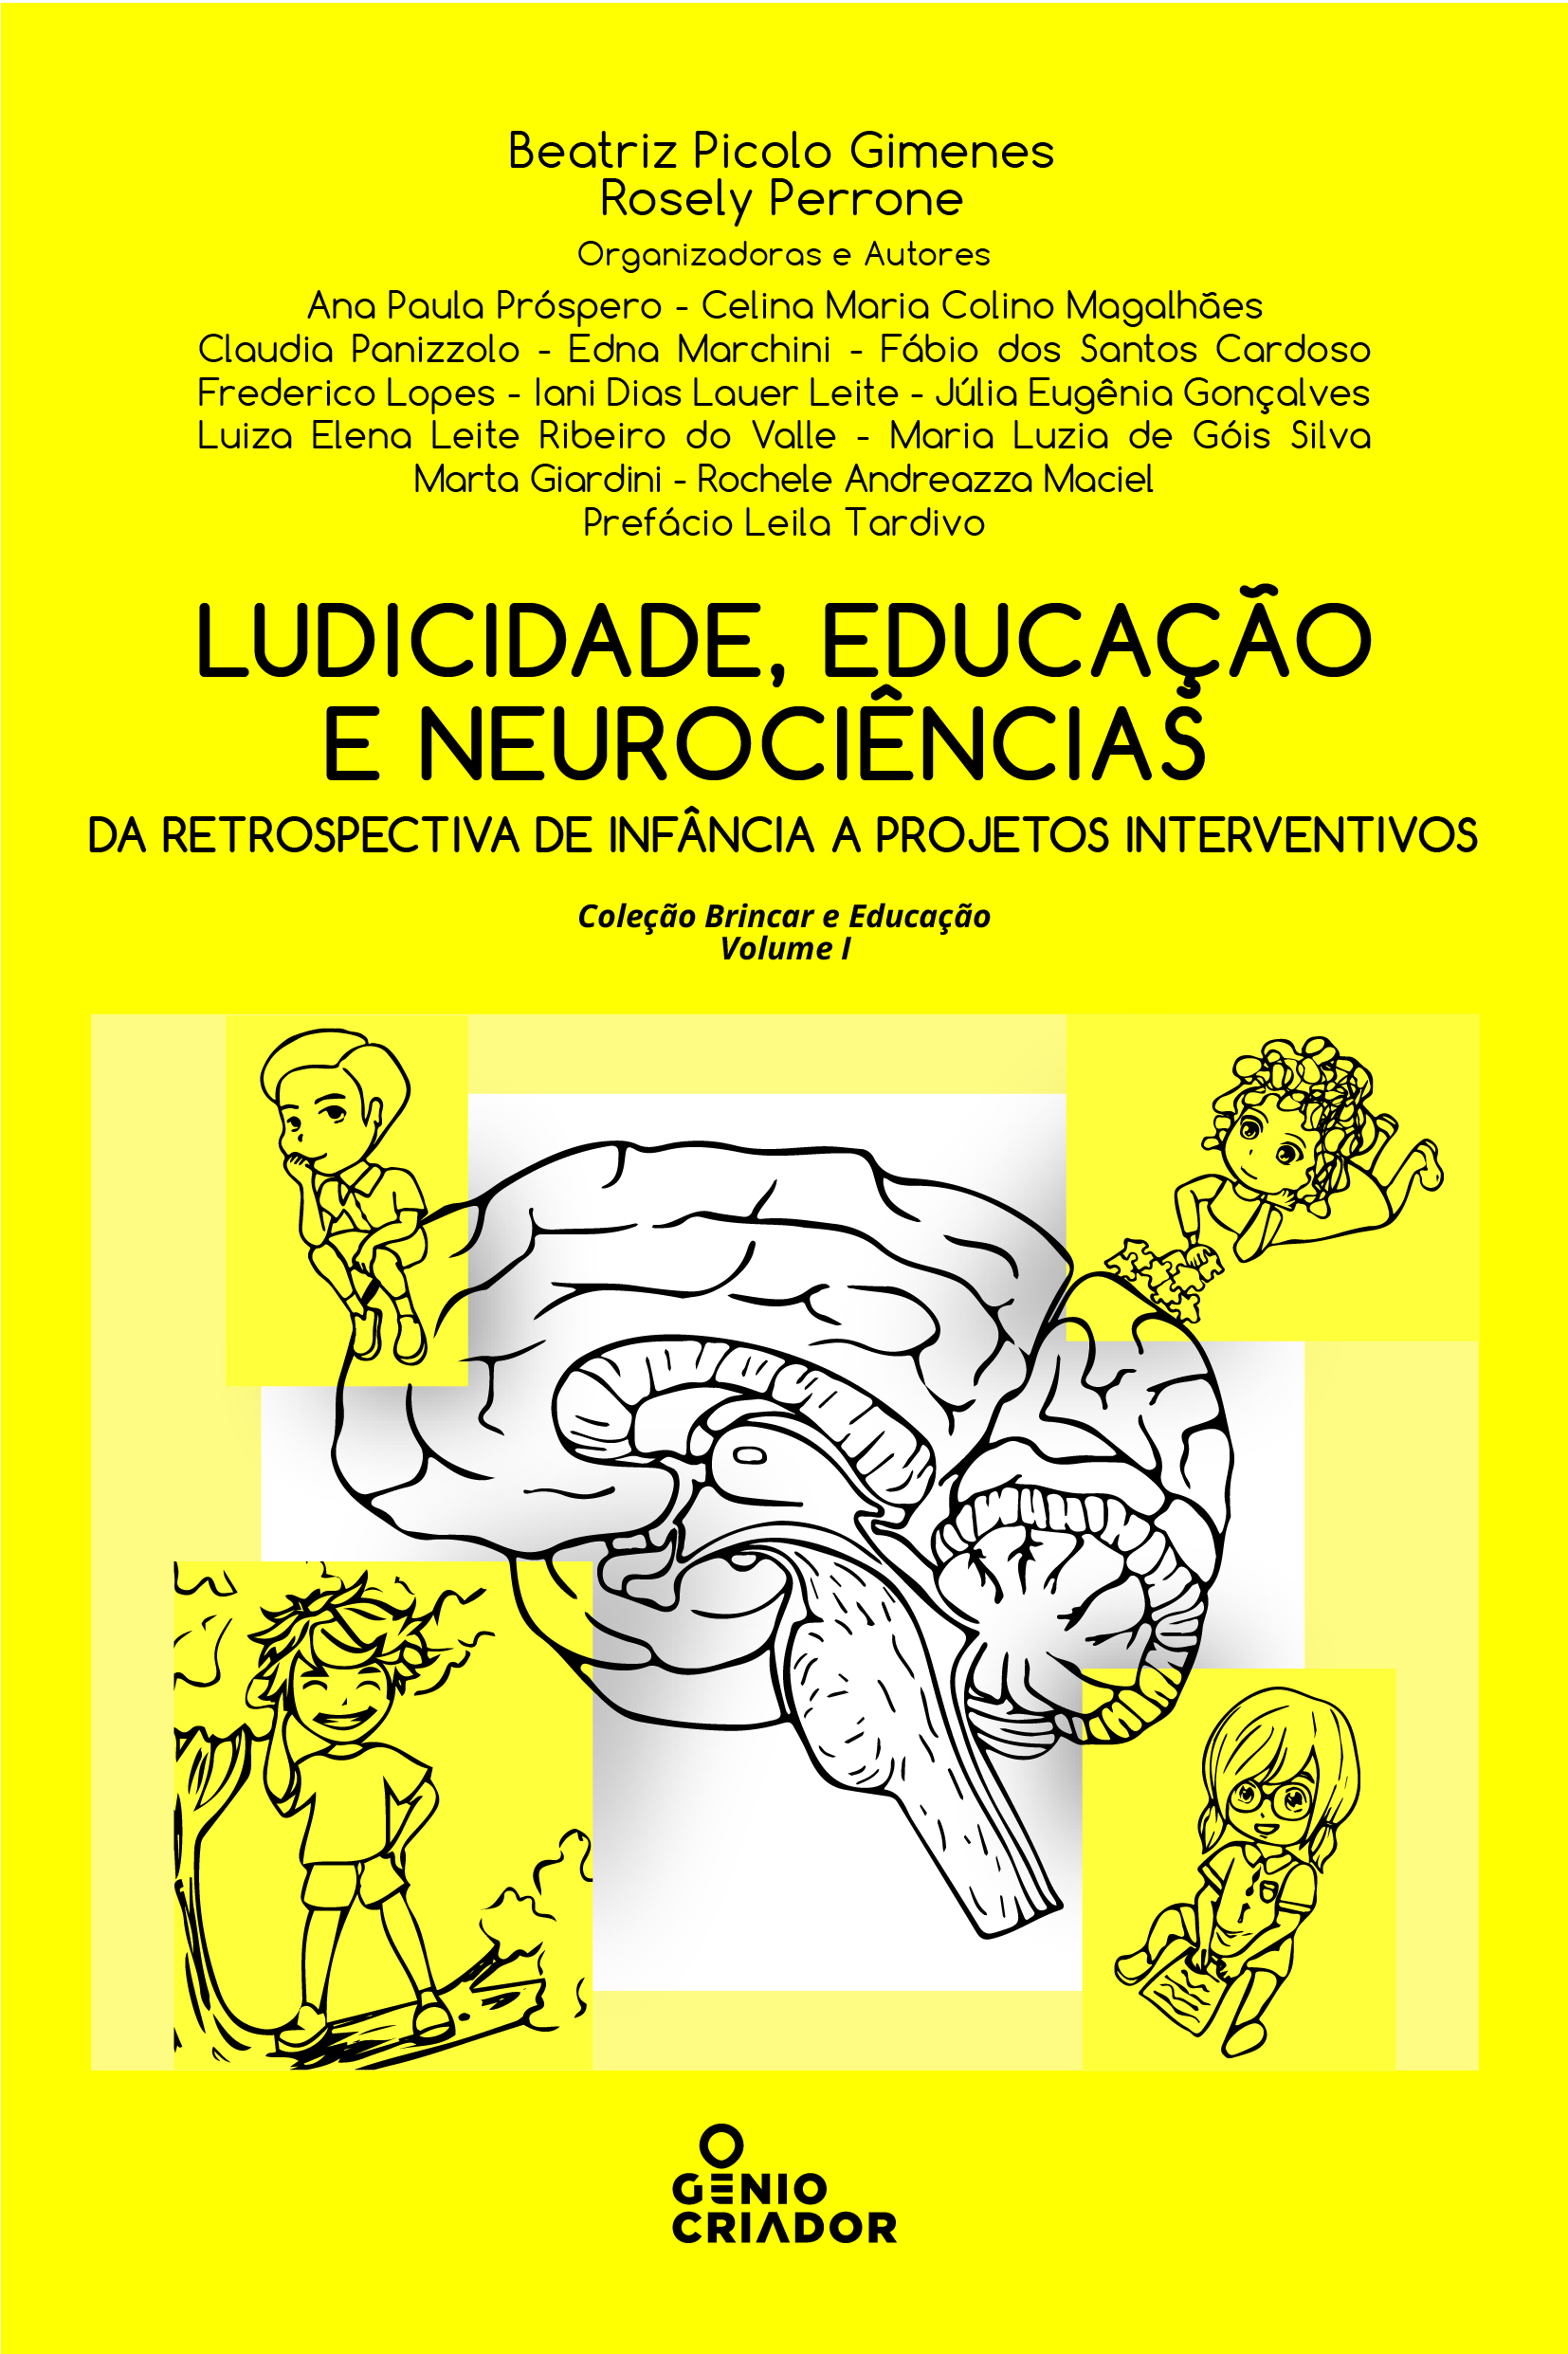 Ludicicade, Educação e Neurociências